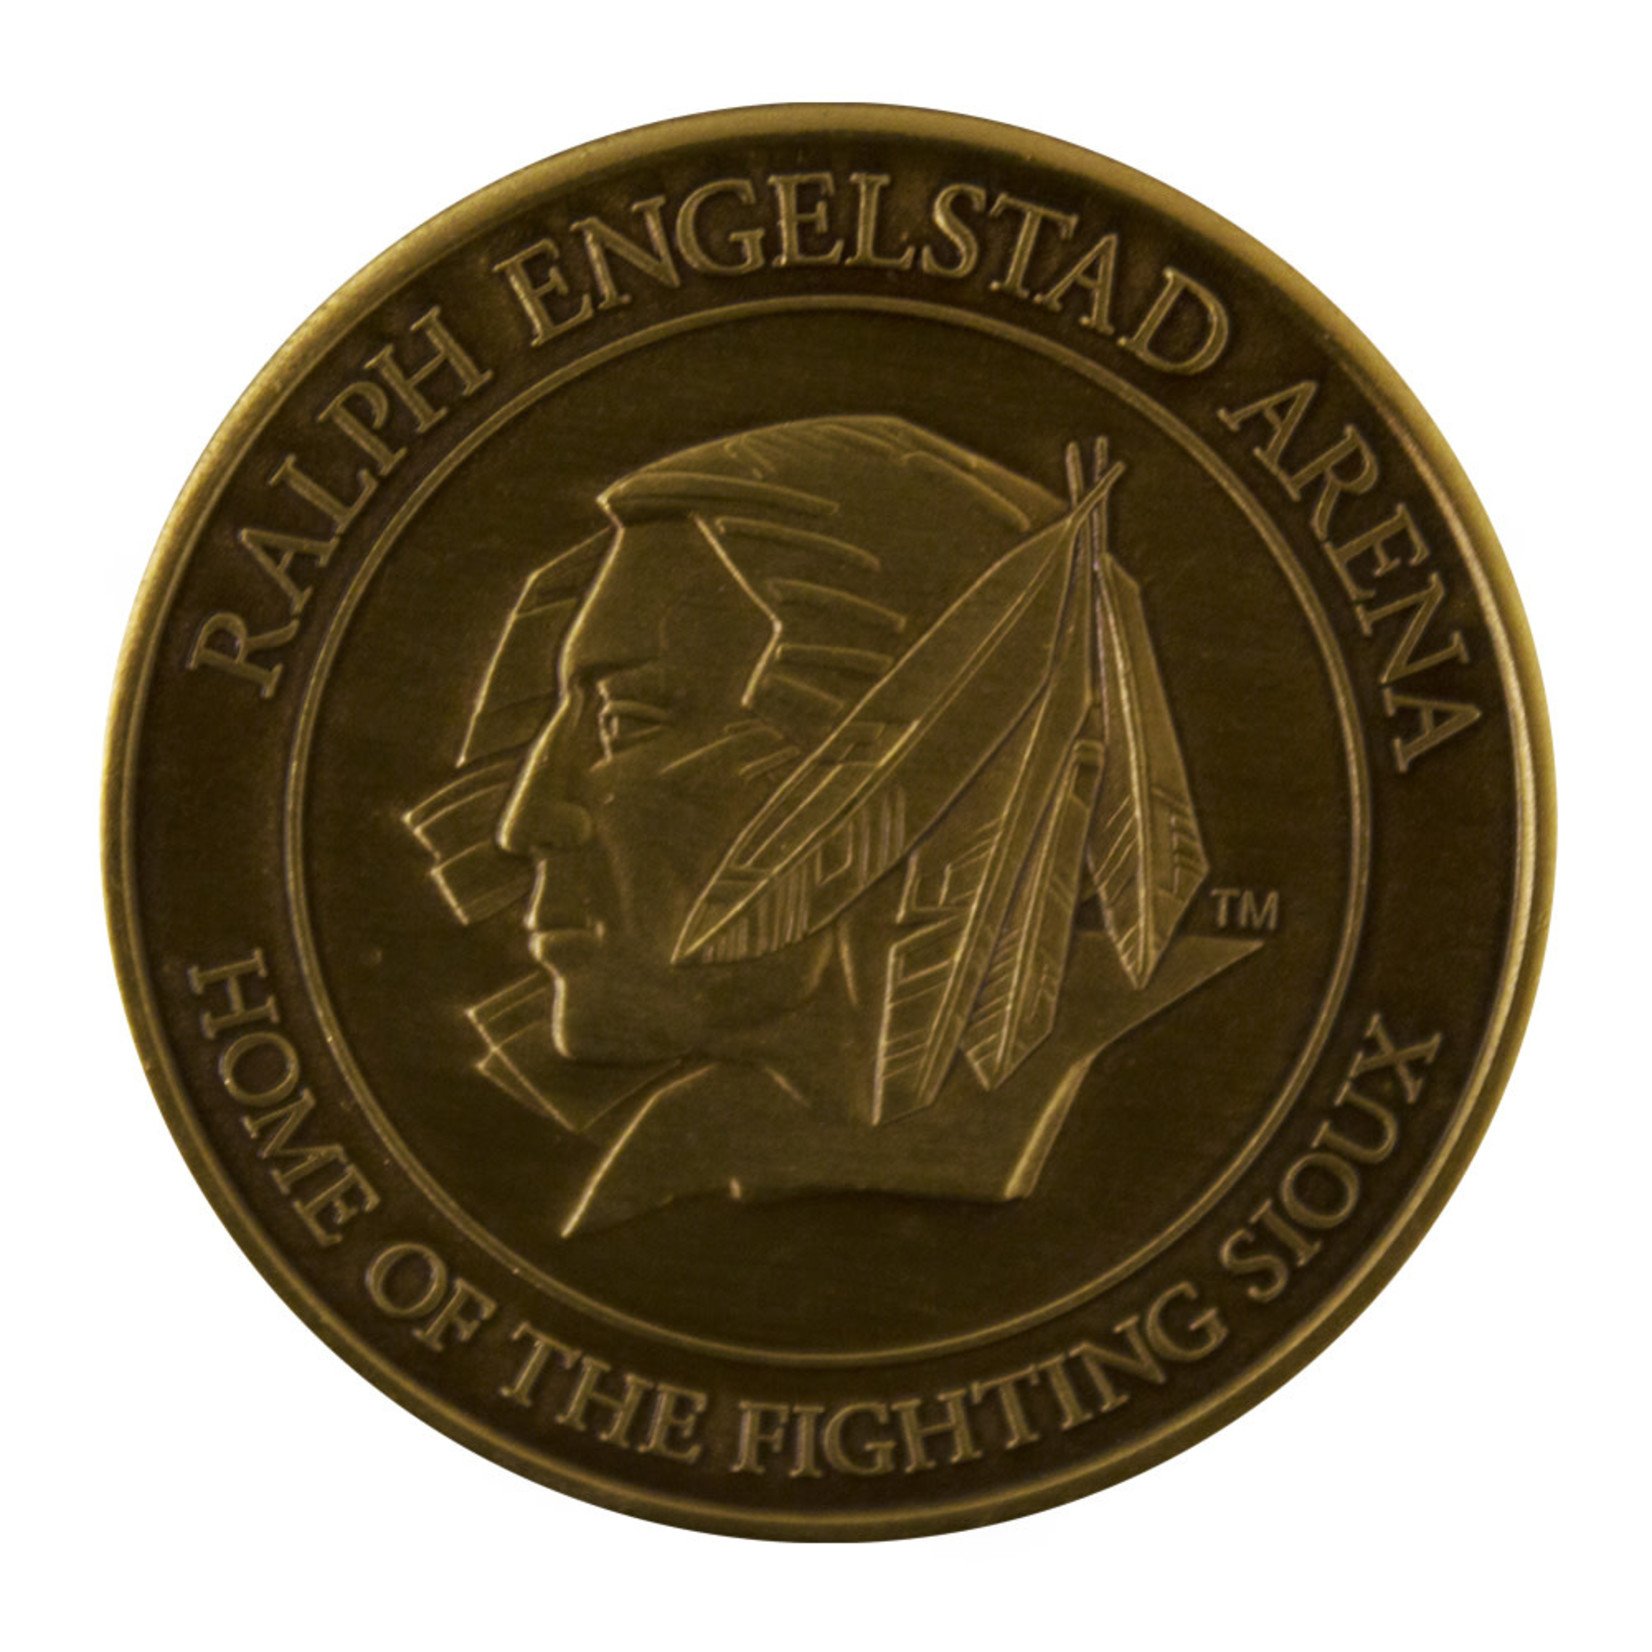 REA Gold Collector Coin 2003